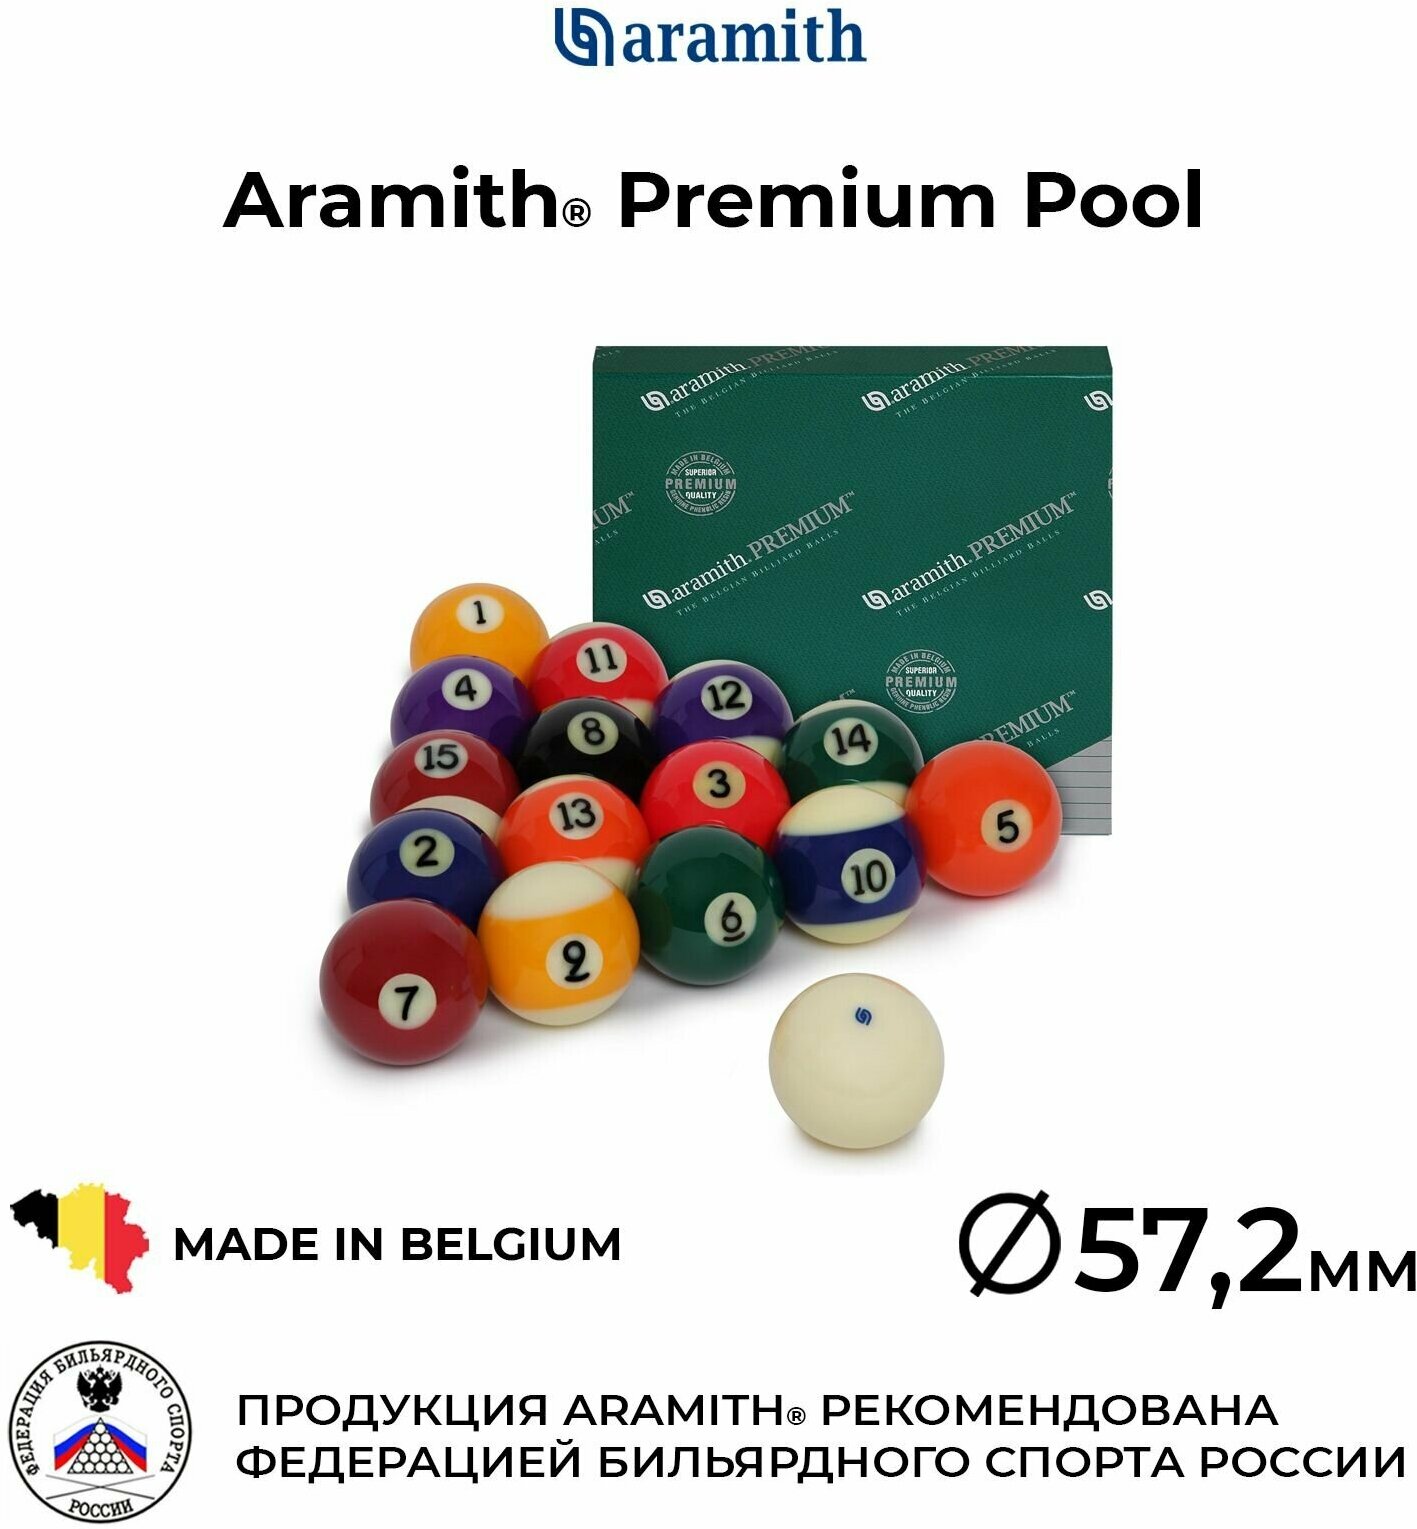 Бильярдные шары 57,2 мм Арамит Премиум для игры в пул / Aramith Premium Pool 57,2 мм белый биток 16 шт.